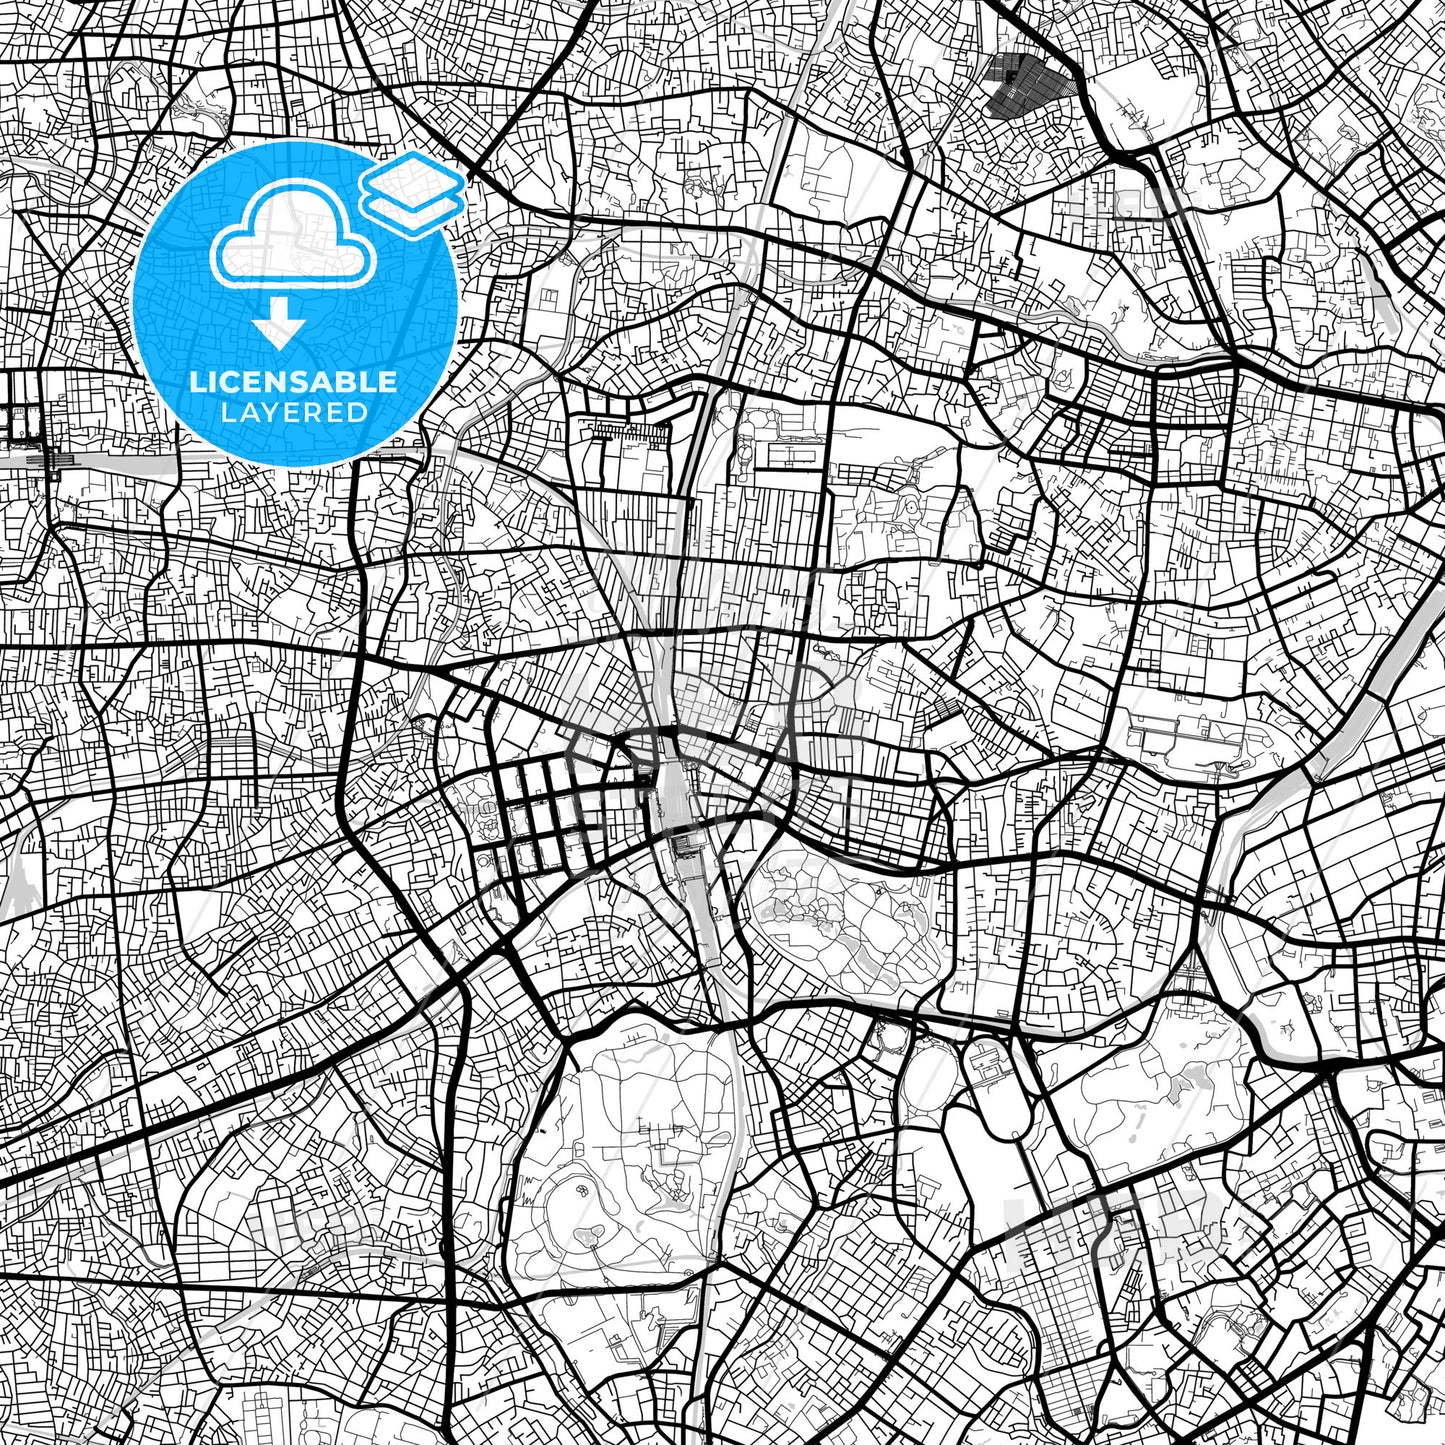 Layered PDF map of Shinjuku, Tokyo, Japan